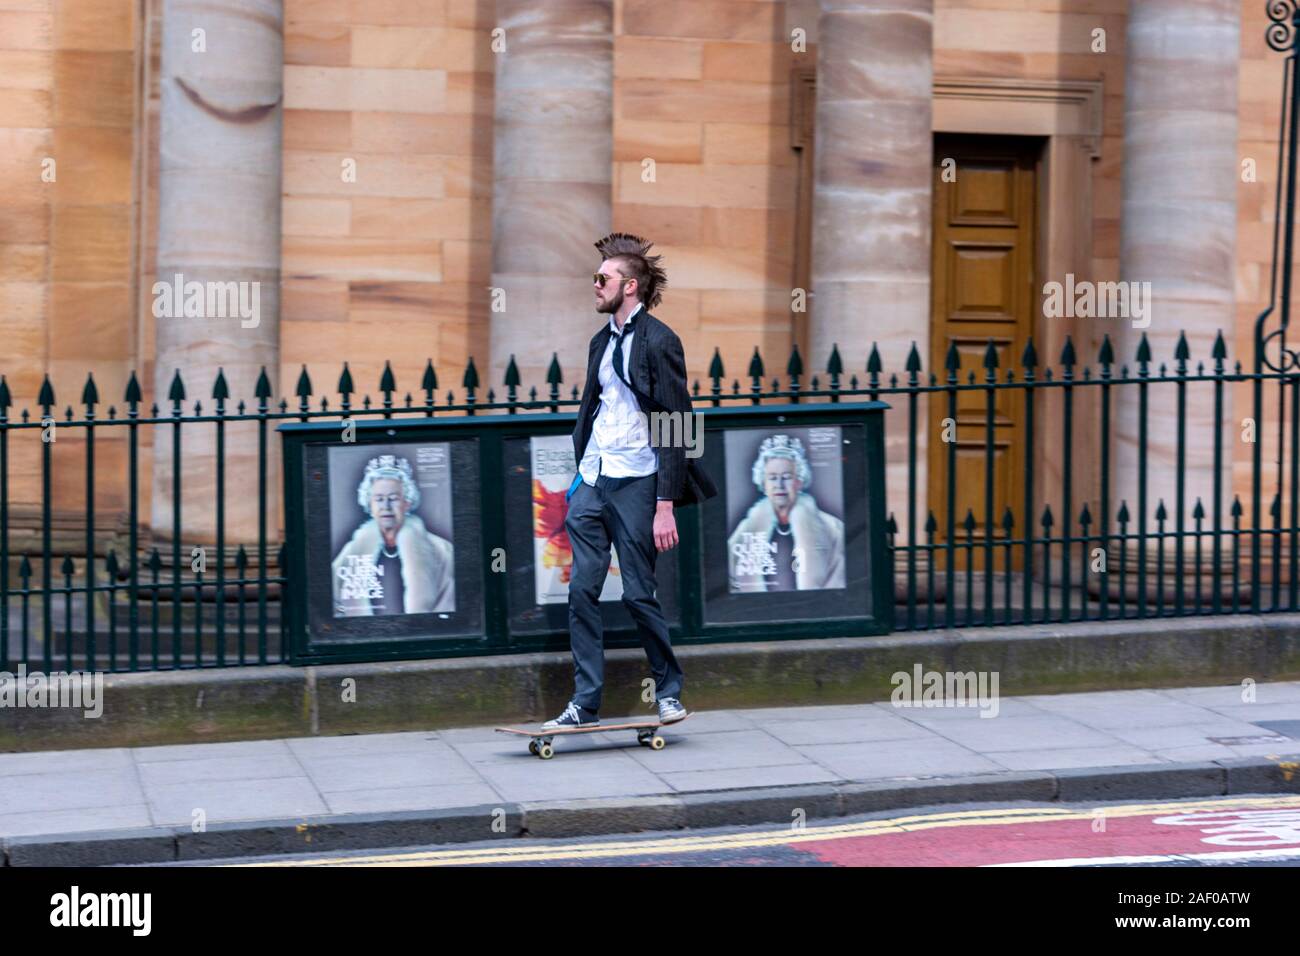 Bart Anzug jungen Jungen mit Haar Kamm mit Skaten in den Damm, Queen  Elisabeth II Hochformat Plakat zur Ausstellung, Edinburgh, Schottland,  Großbritannien Stockfotografie - Alamy